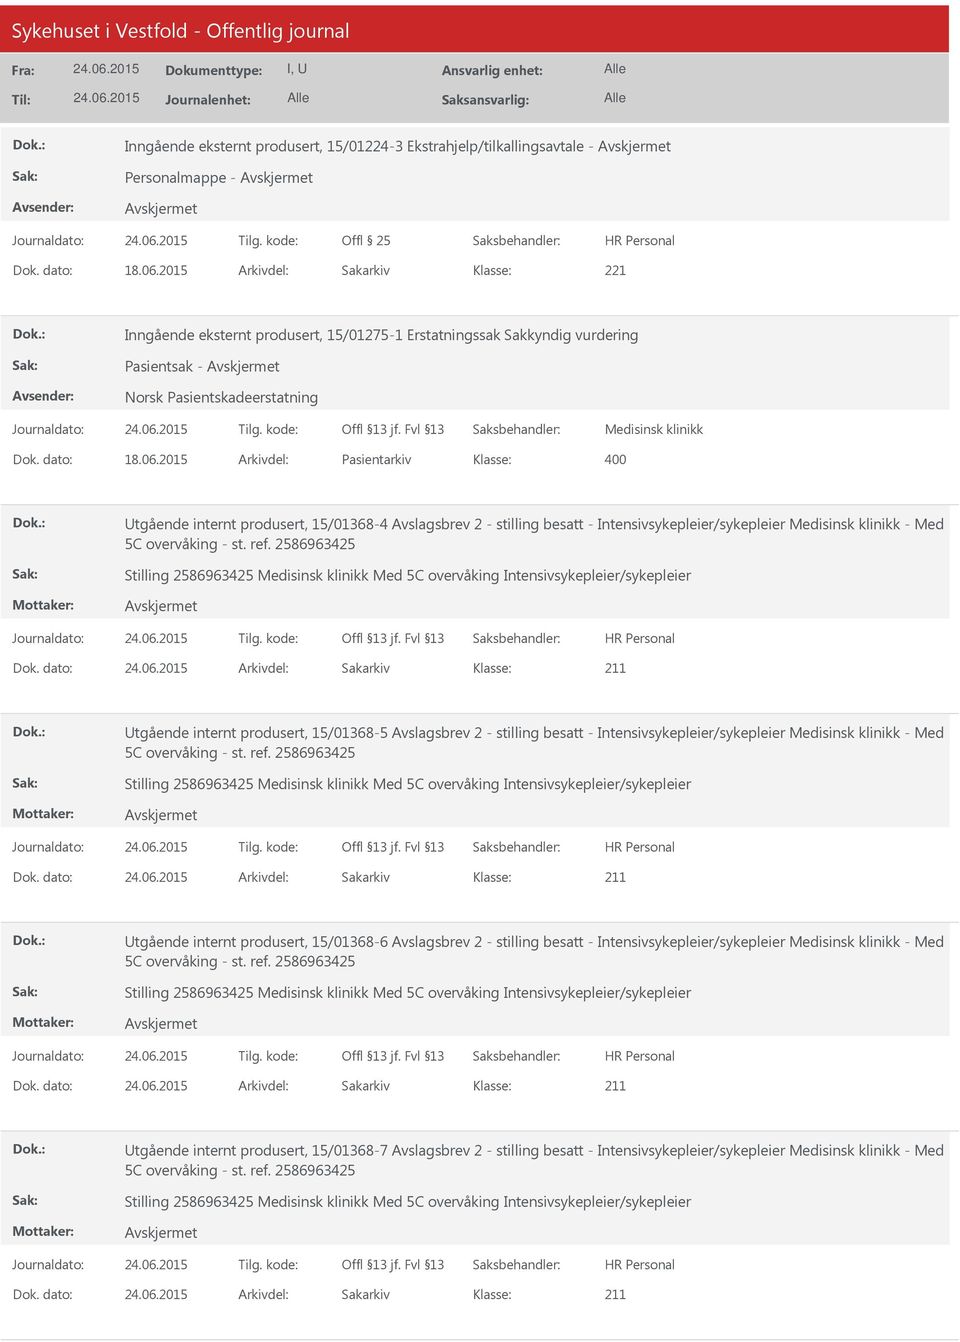 2015 Arkivdel: Pasientarkiv Utgående internt produsert, 15/01368-4 Avslagsbrev 2 - stilling besatt - Intensivsykepleier/sykepleier Medisinsk klinikk - Med 5C overvåking - st. ref.